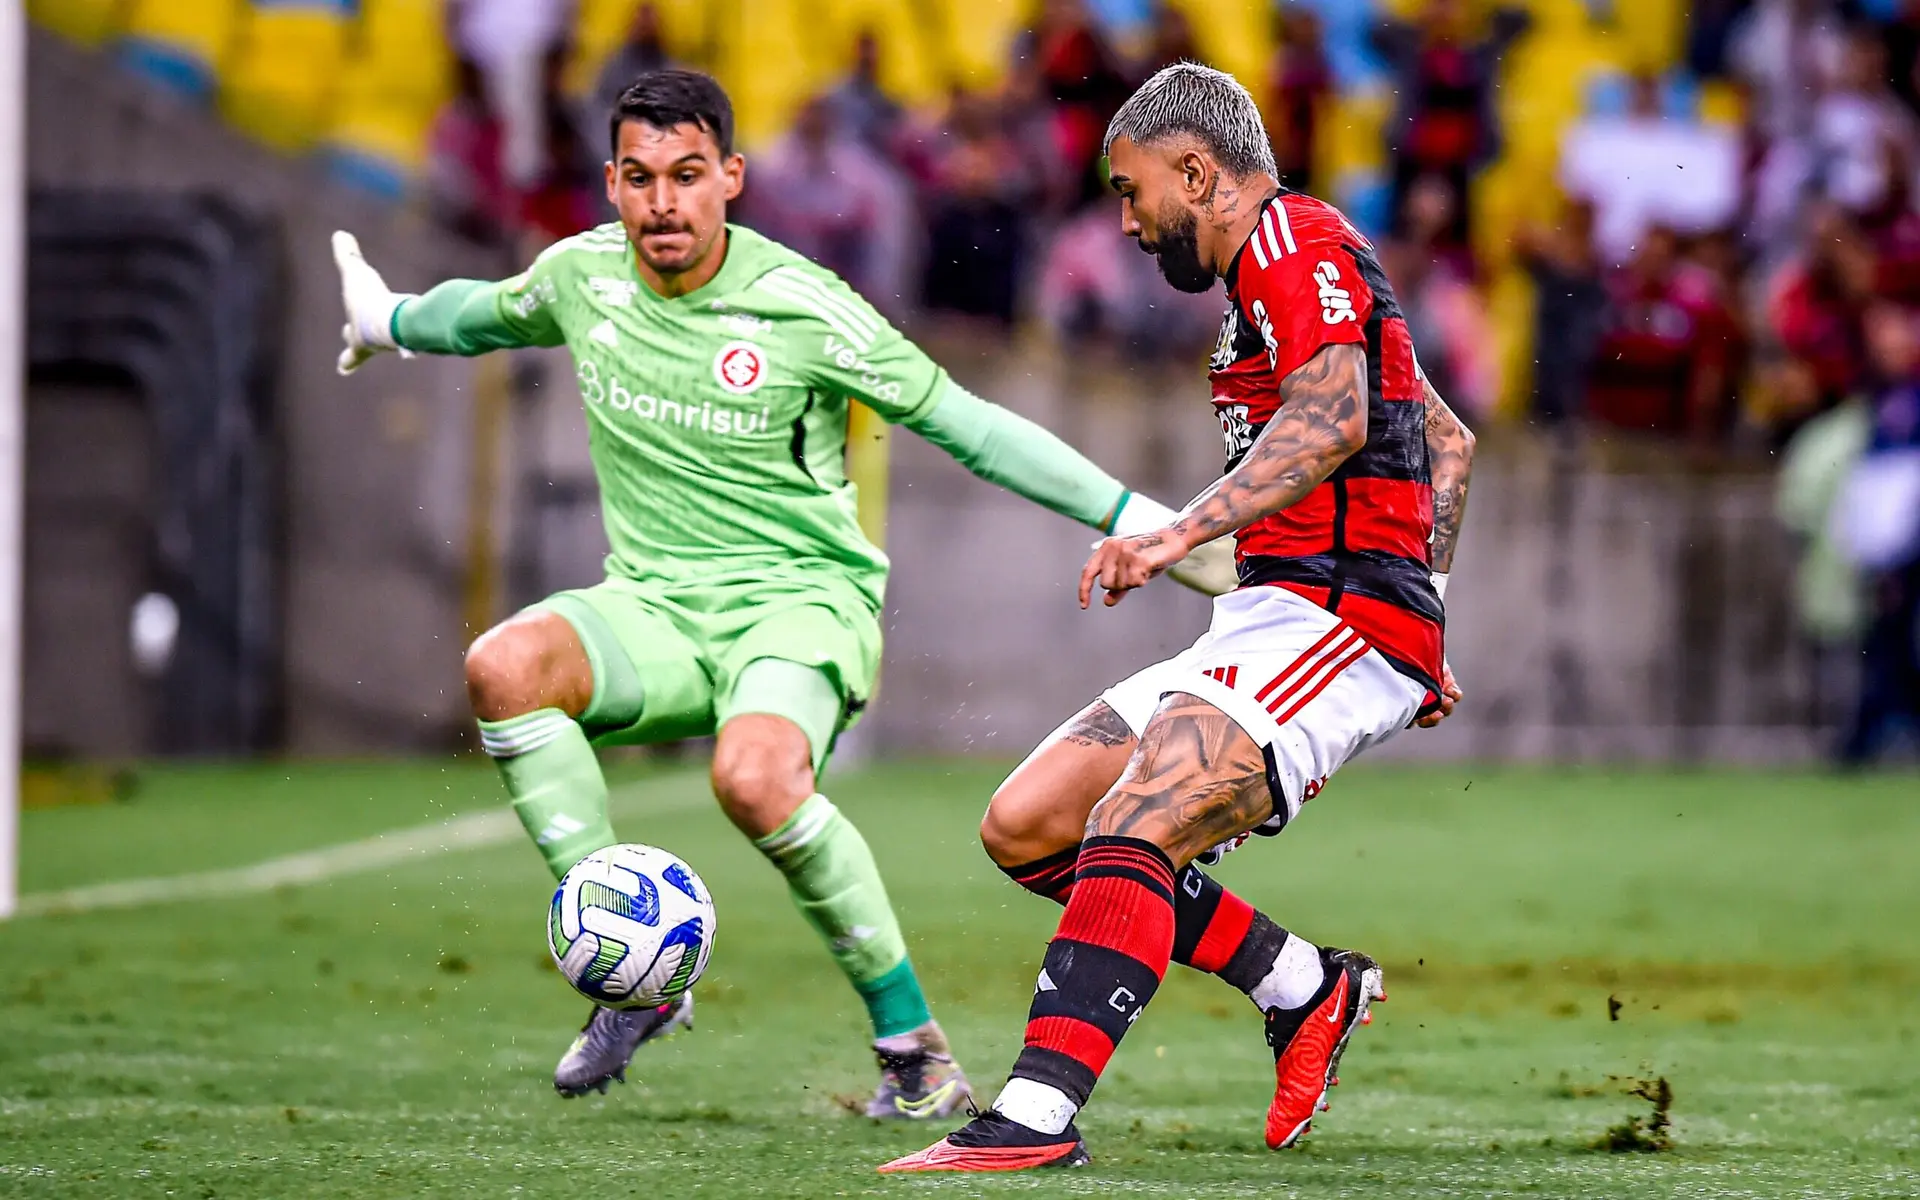 Flamengo Enfrenta Desafios Táticos e Despertam Preocupações nos Torcedores às Vésperas da Final da Copa do Brasil dias 17 e 24 de setembro